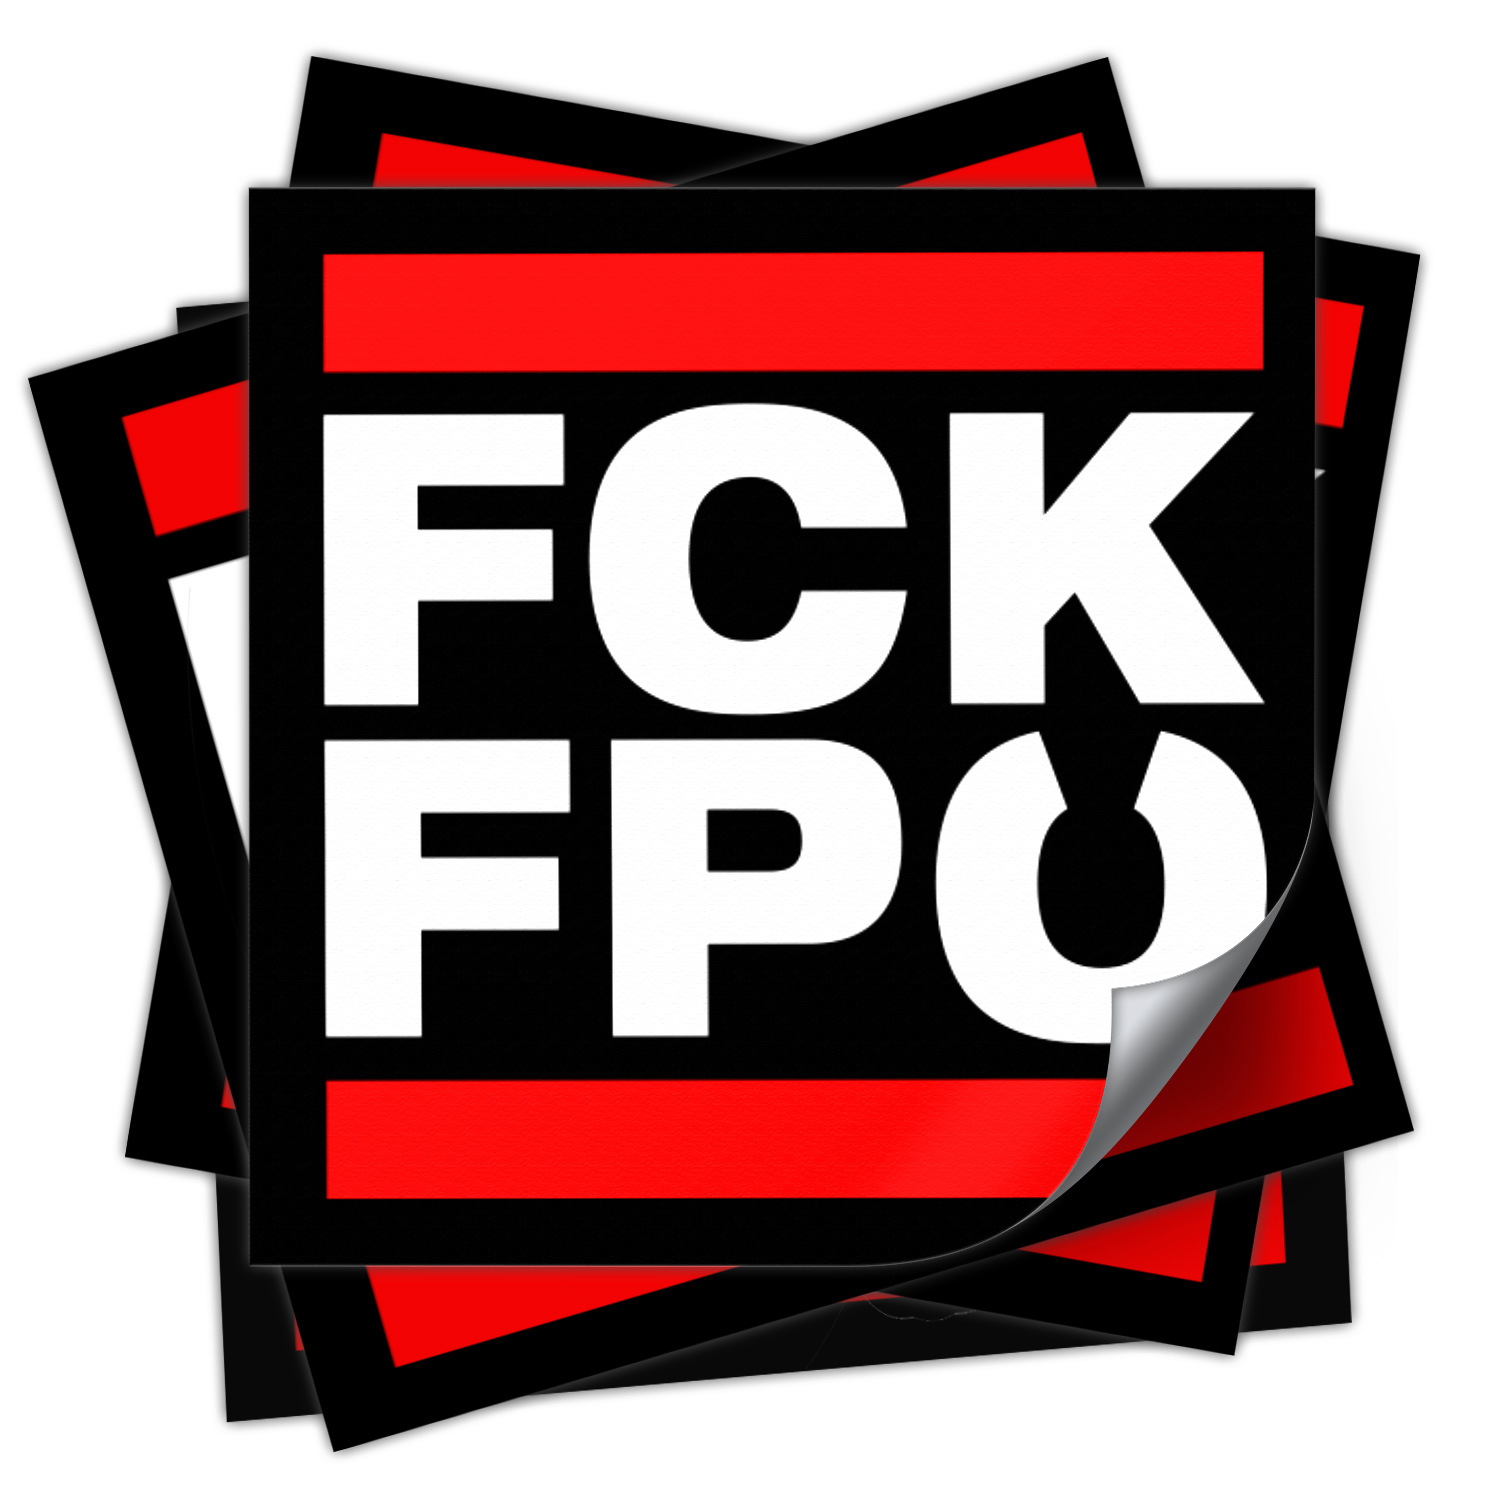 Aufkleber »FCK FPÖ« (10,5 x 10,5 cm)